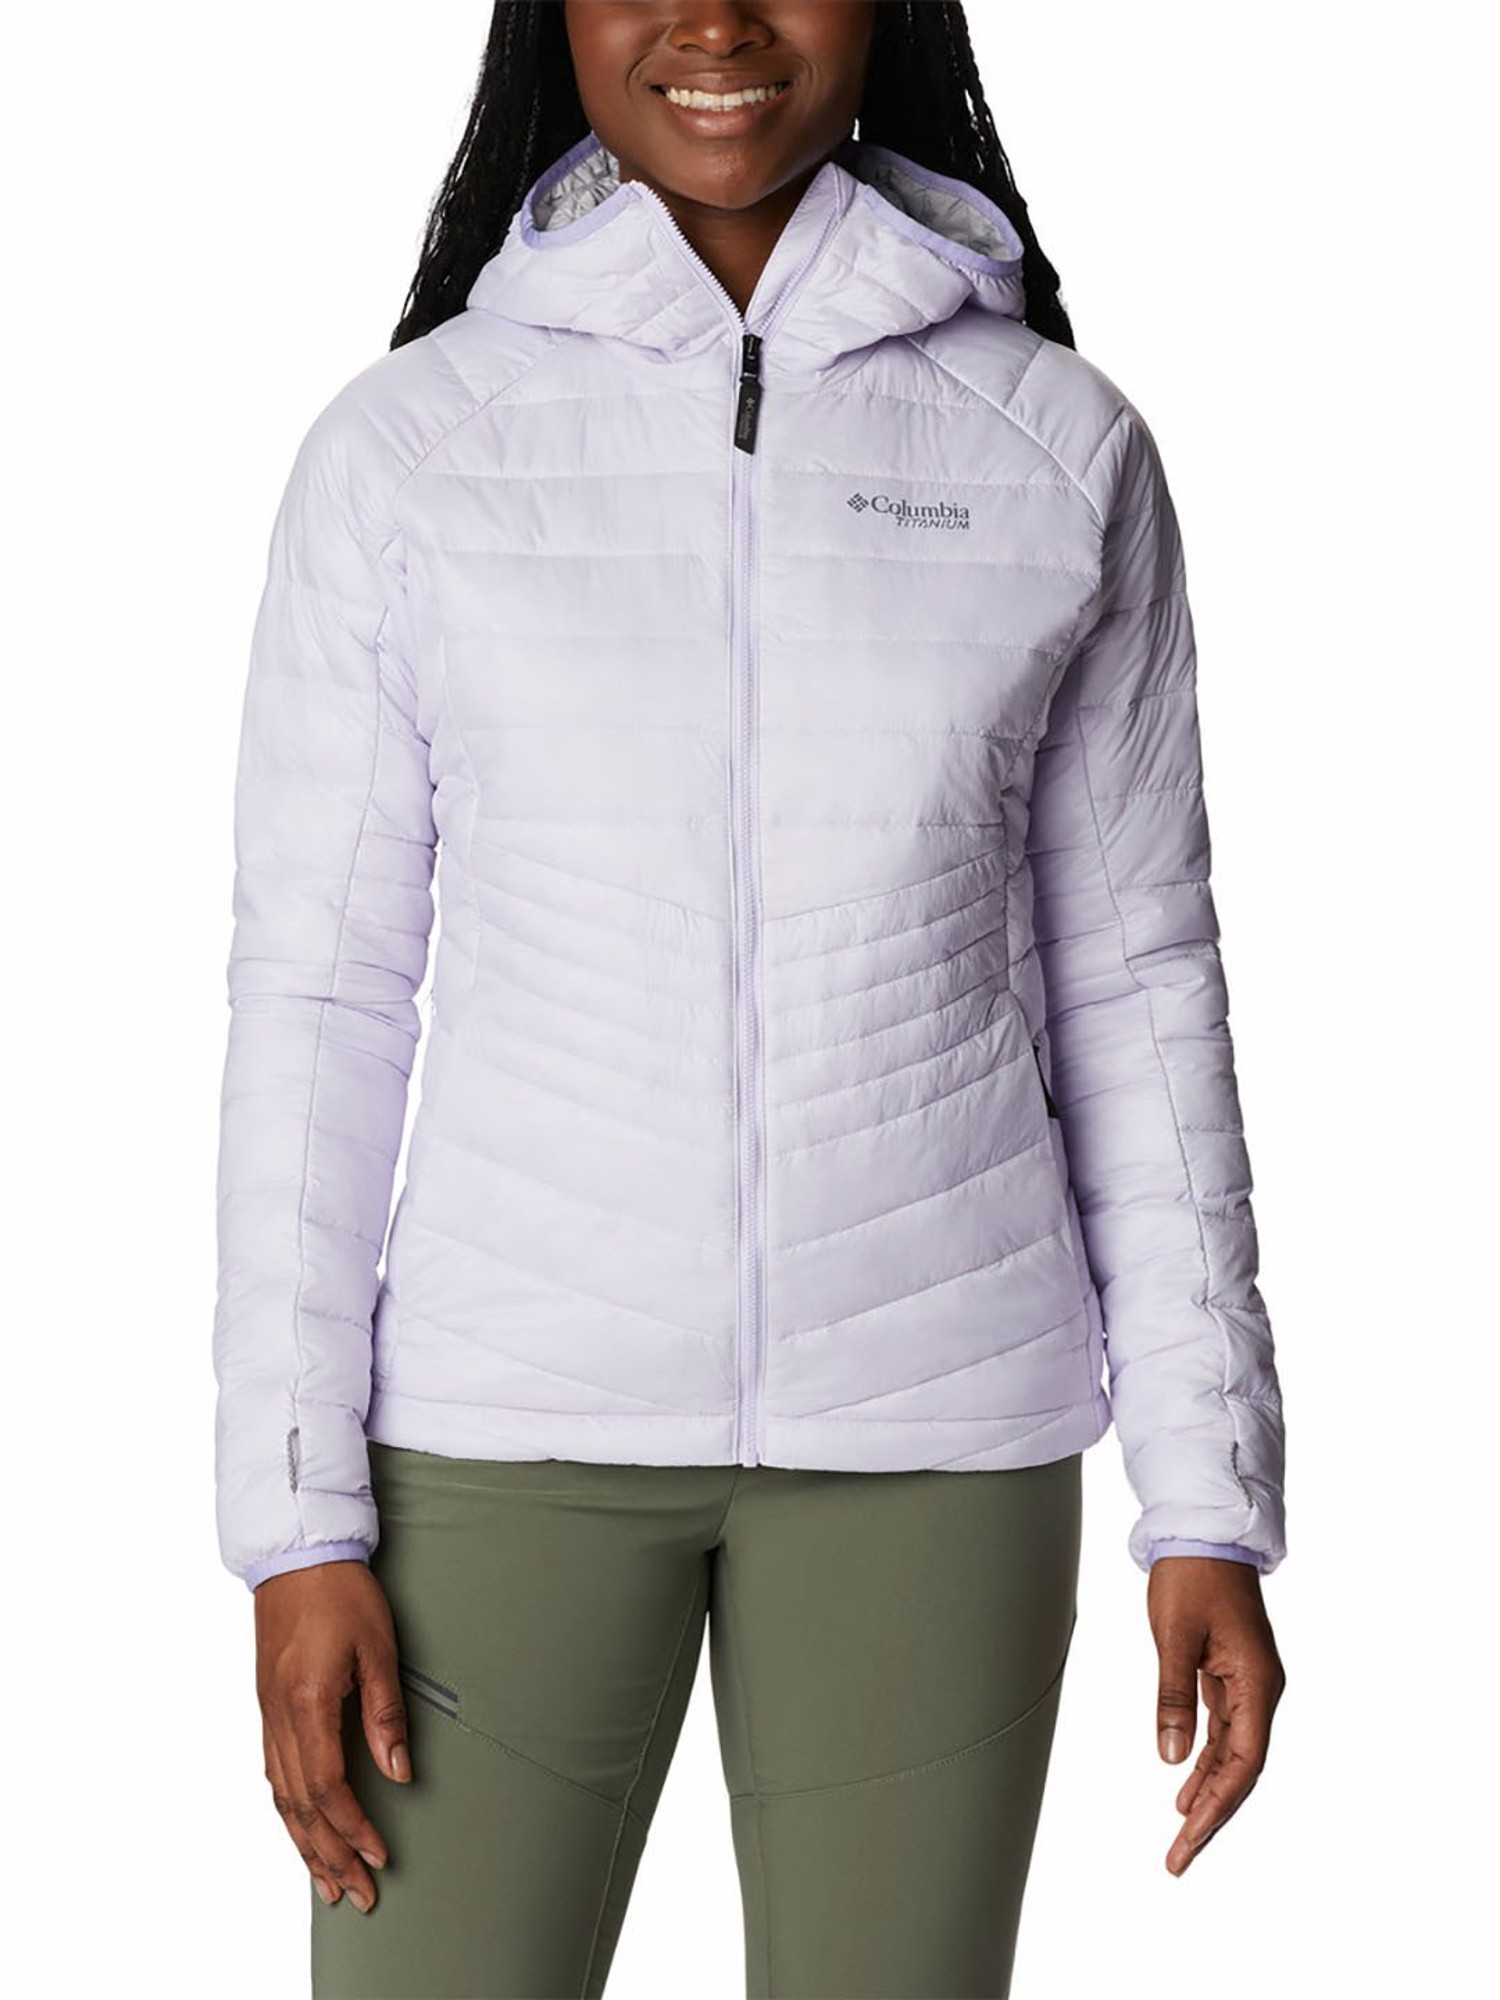 Columbia Jackets & Hoodies : Buy Columbia Women Purple Full Sleeve Joy Peak  Jacket Online